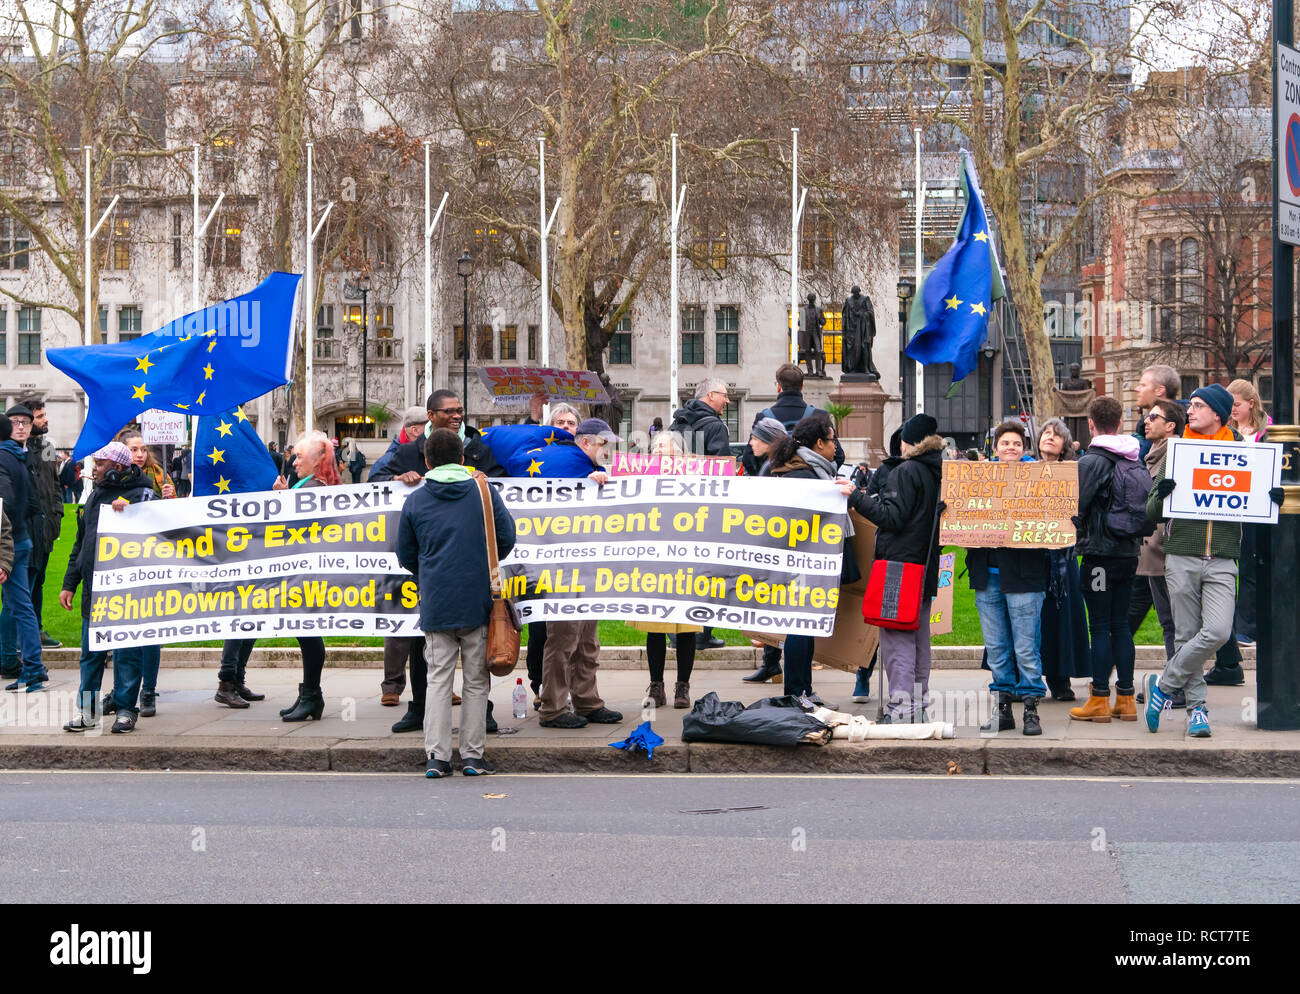 Manifestantes se congregan en la Plaza del Parlamento antes de la votación significativa (MV) en el acuerdo de retirada Brexit Westminster, Londres, Reino Unido el 15 de enero de 2019 Foto de stock